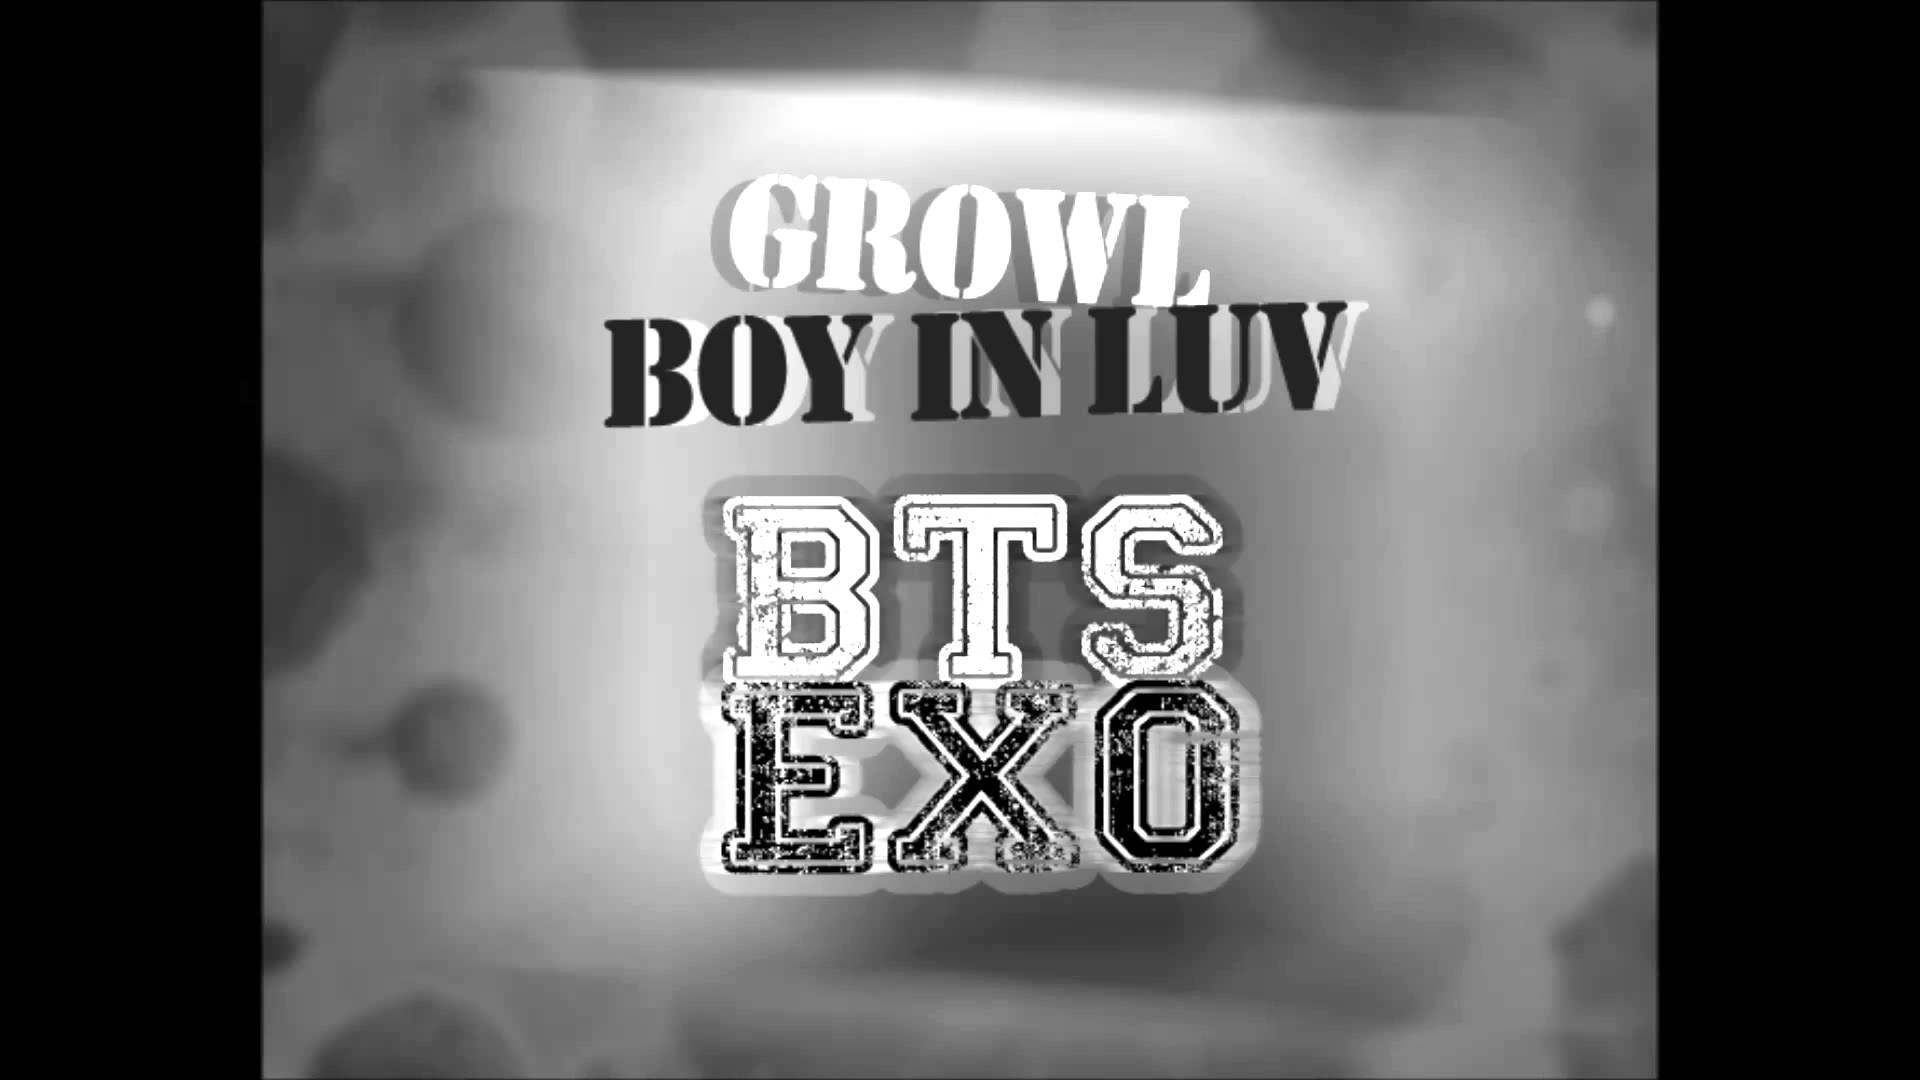 1920x1080 [MASHUP] ë°©íìëë¨ (BTS) & EXO - ìë¨ì (Boy In Luv) + ì¼ë¥´ë  (Growl) Remix. - YouTube